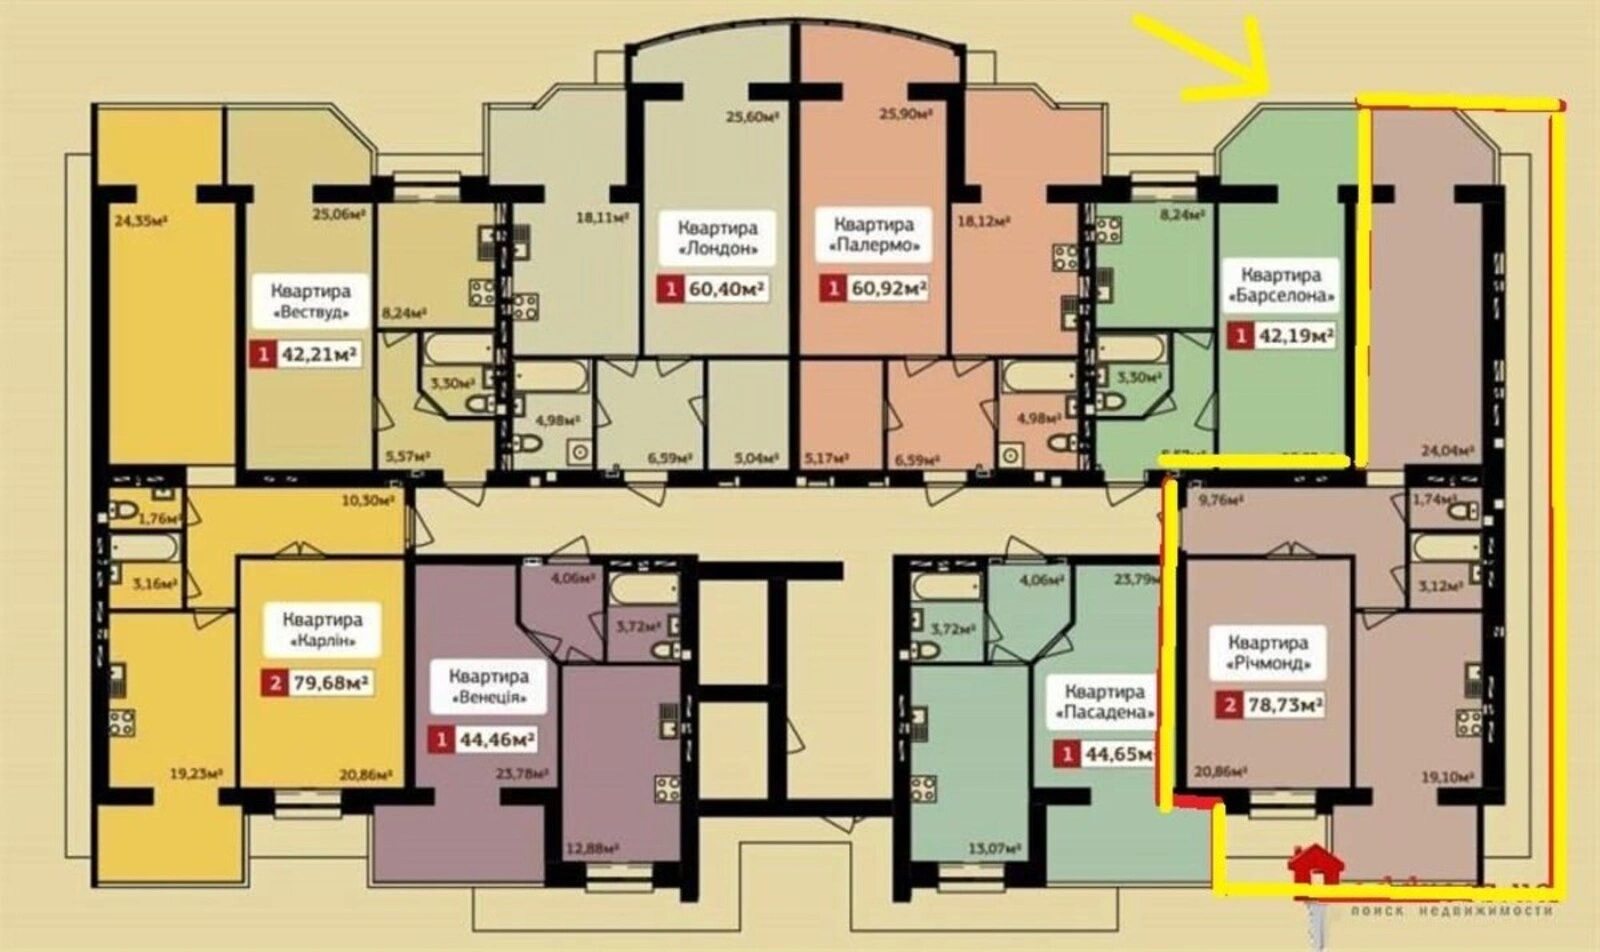 Продам 2-х кімнатну квартиру сучасного планування на Дружбі